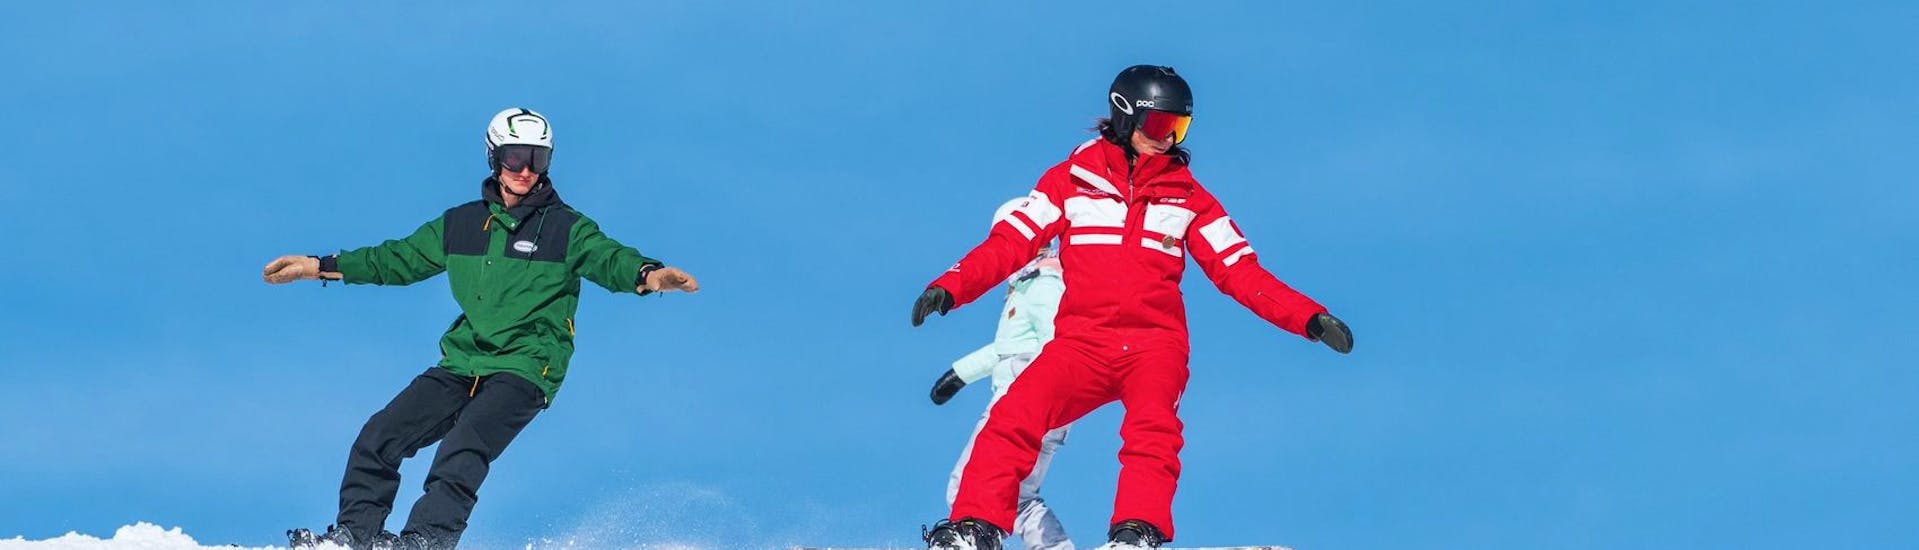 Snowboarders maken de juiste gebaren tijdens de privélessen snowboarden voor alle niveaus bij ESF La Tania.